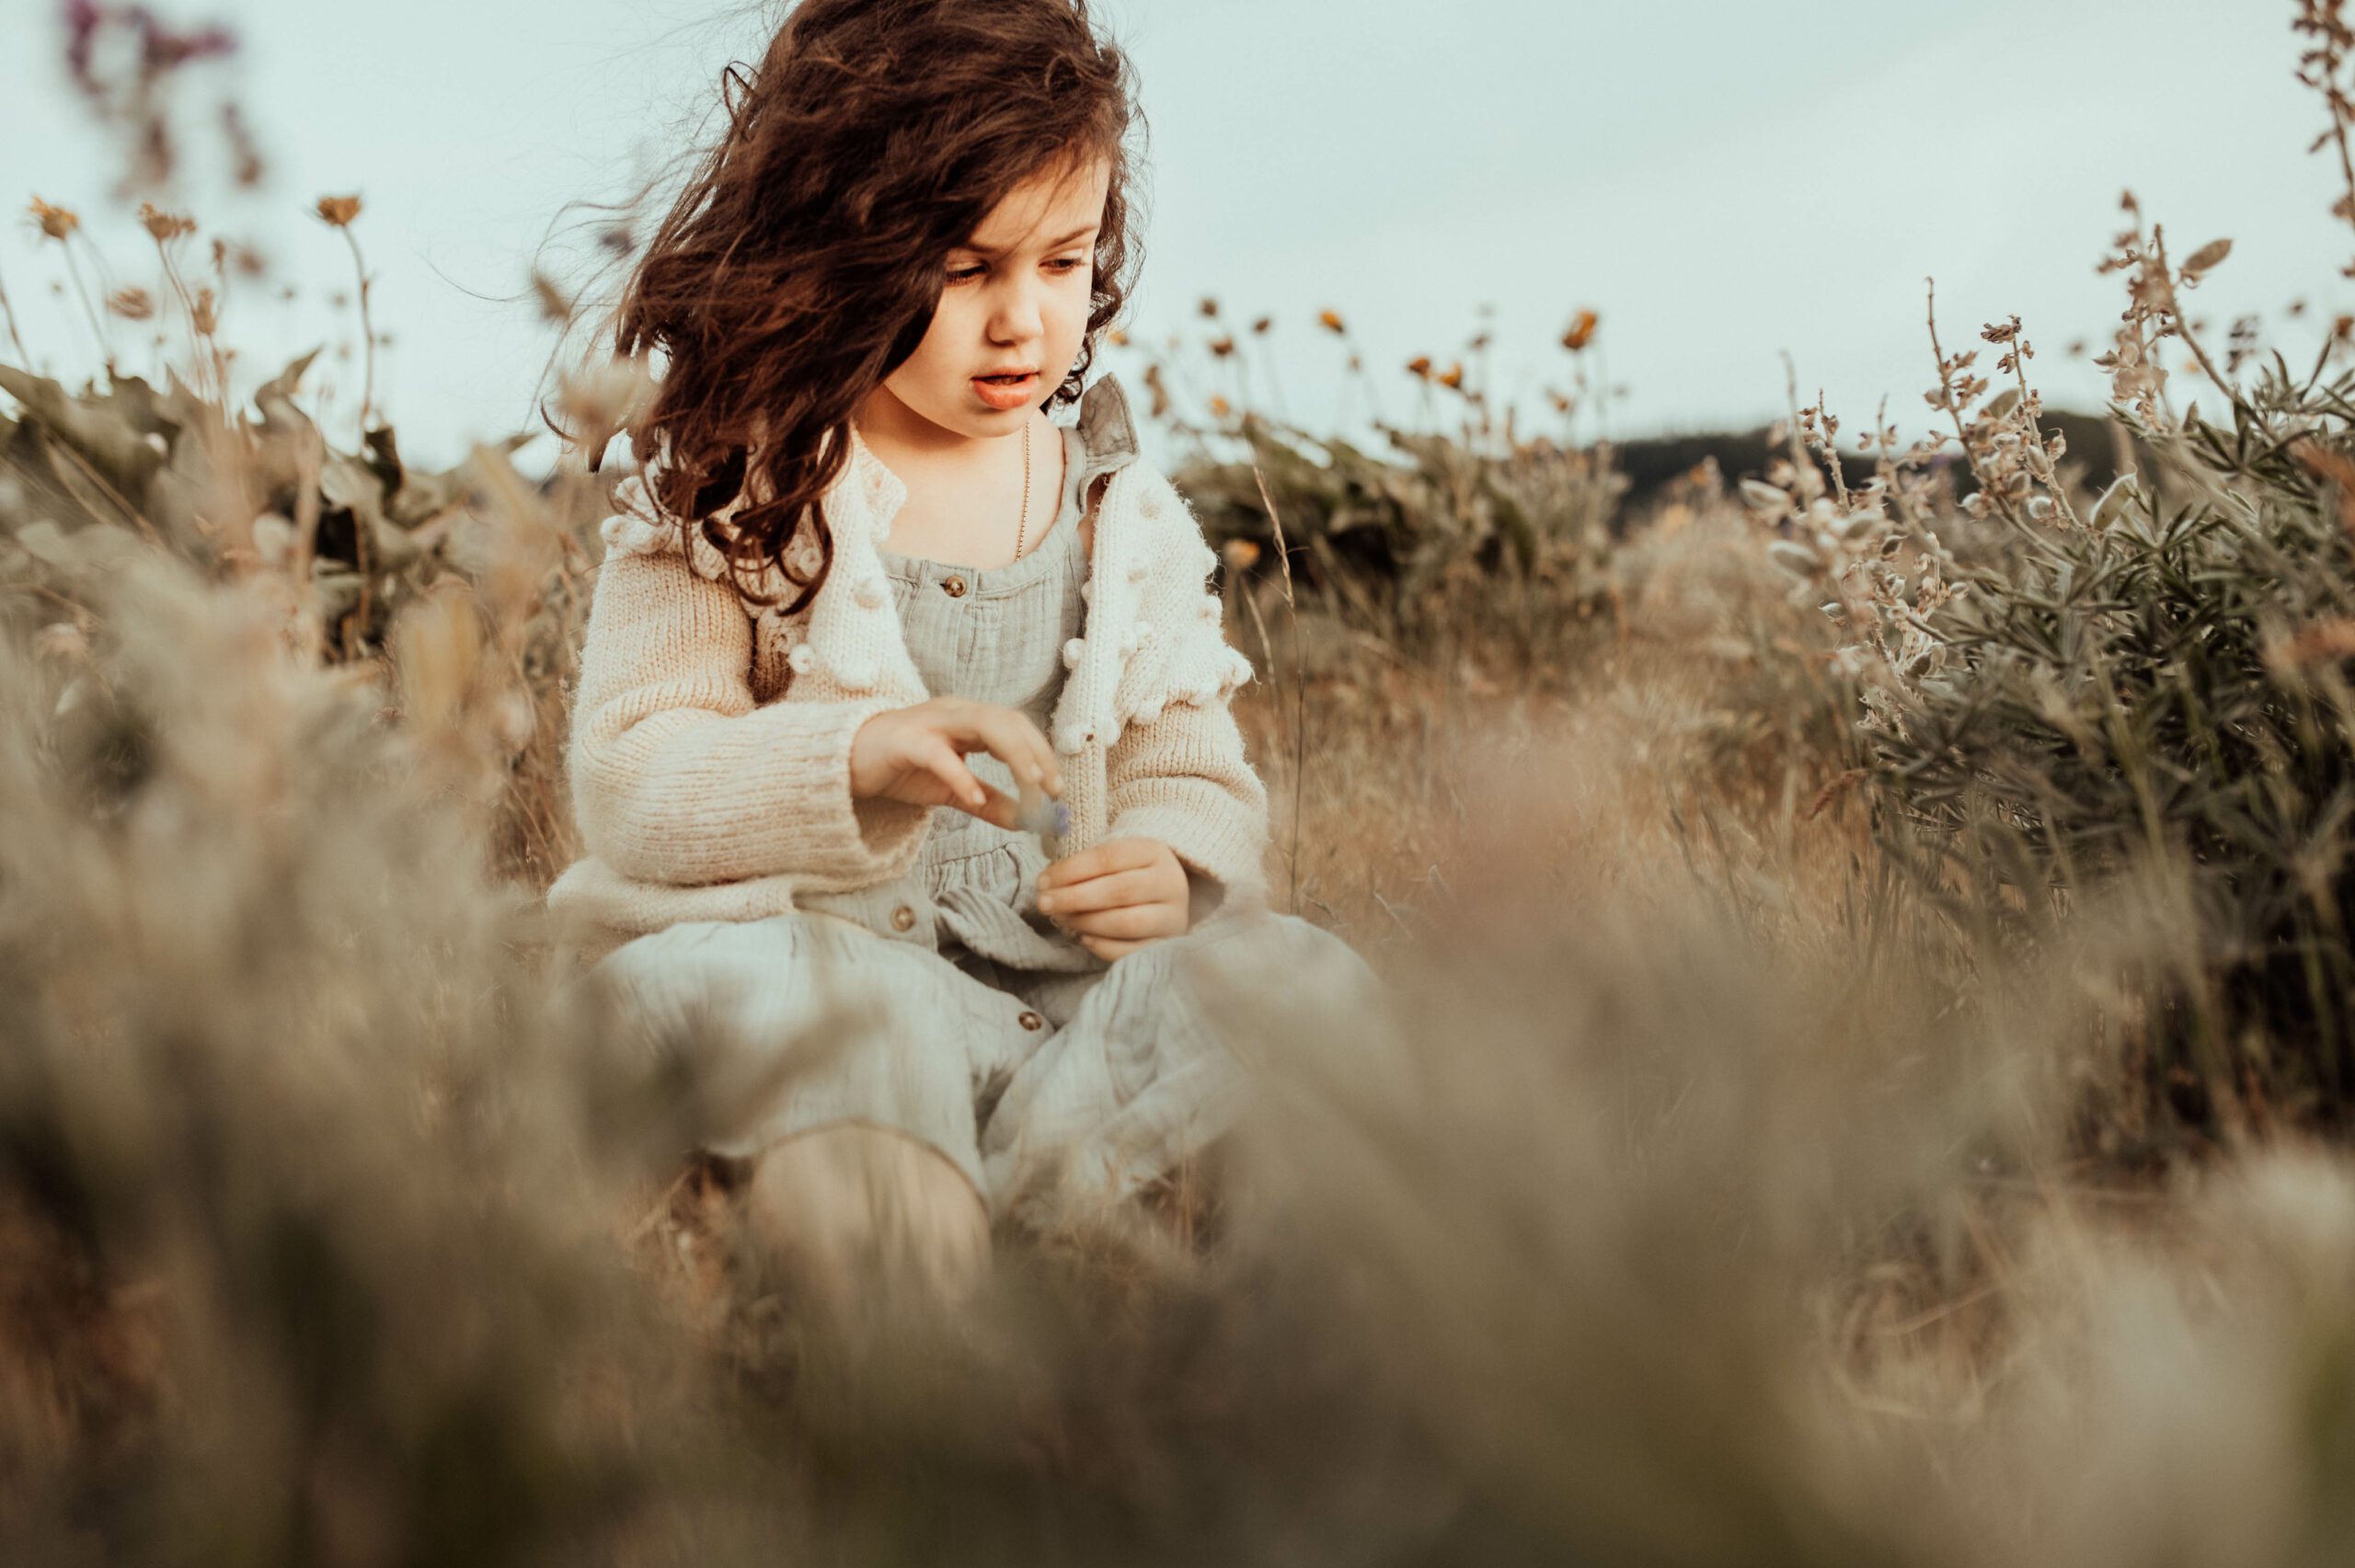 Small girl in wildflower field